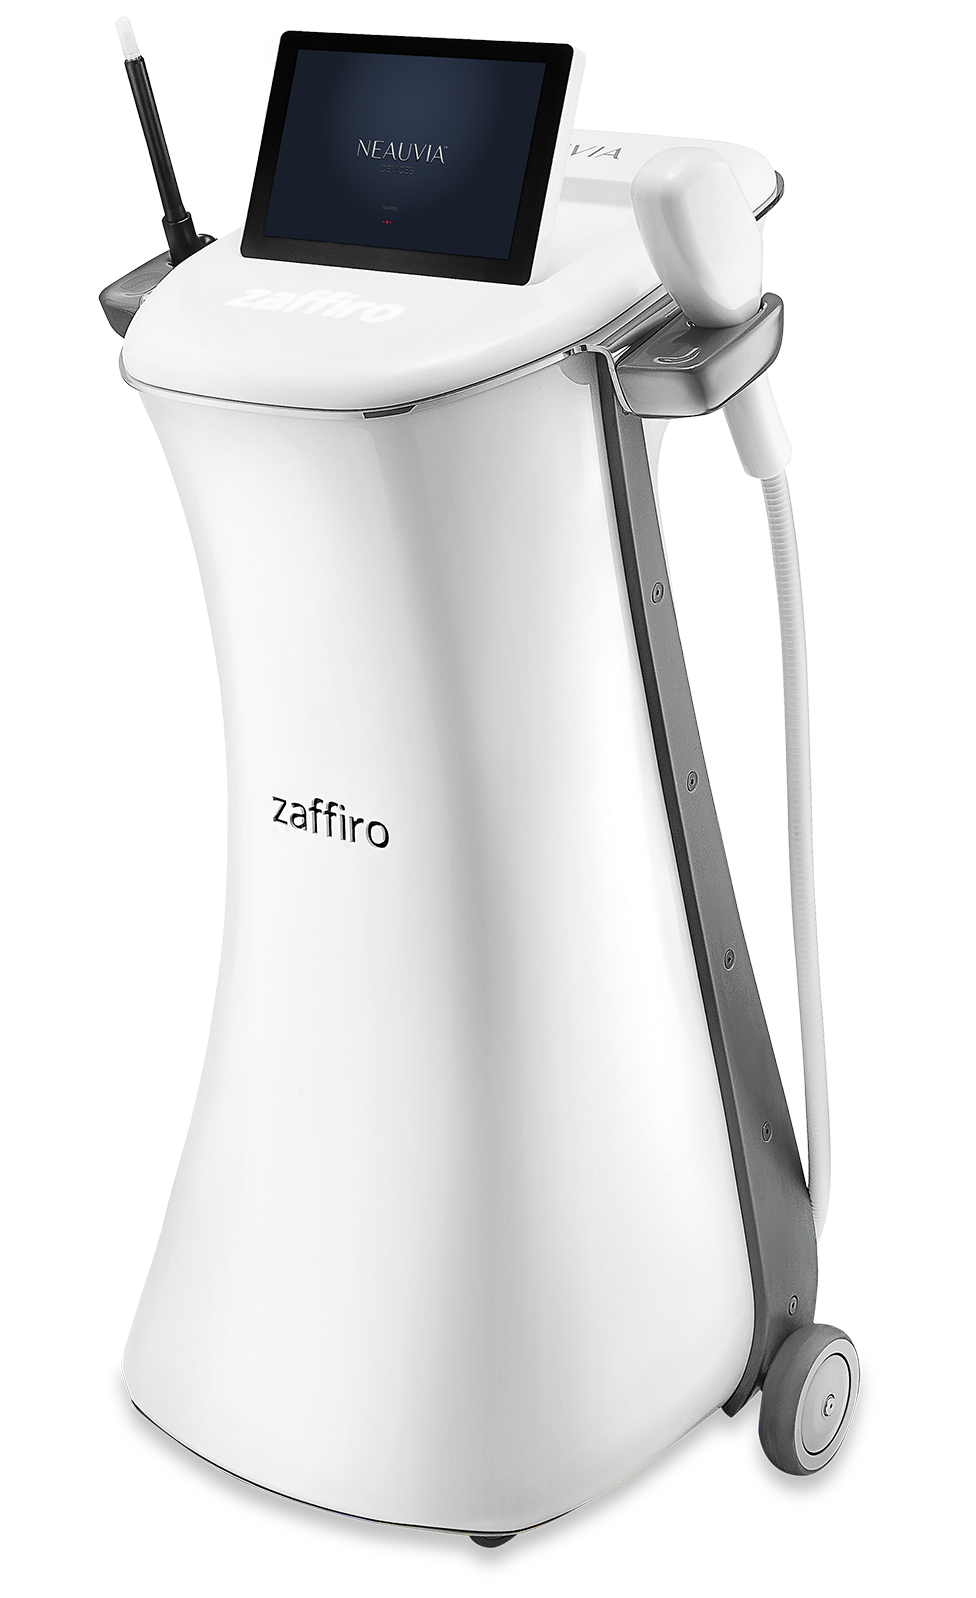 ZAFFIRO è un dispositivo medico innovativo che combina idro-esfoliazione e termo-lifting a infrarossi per illuminare e rassodare la pelle